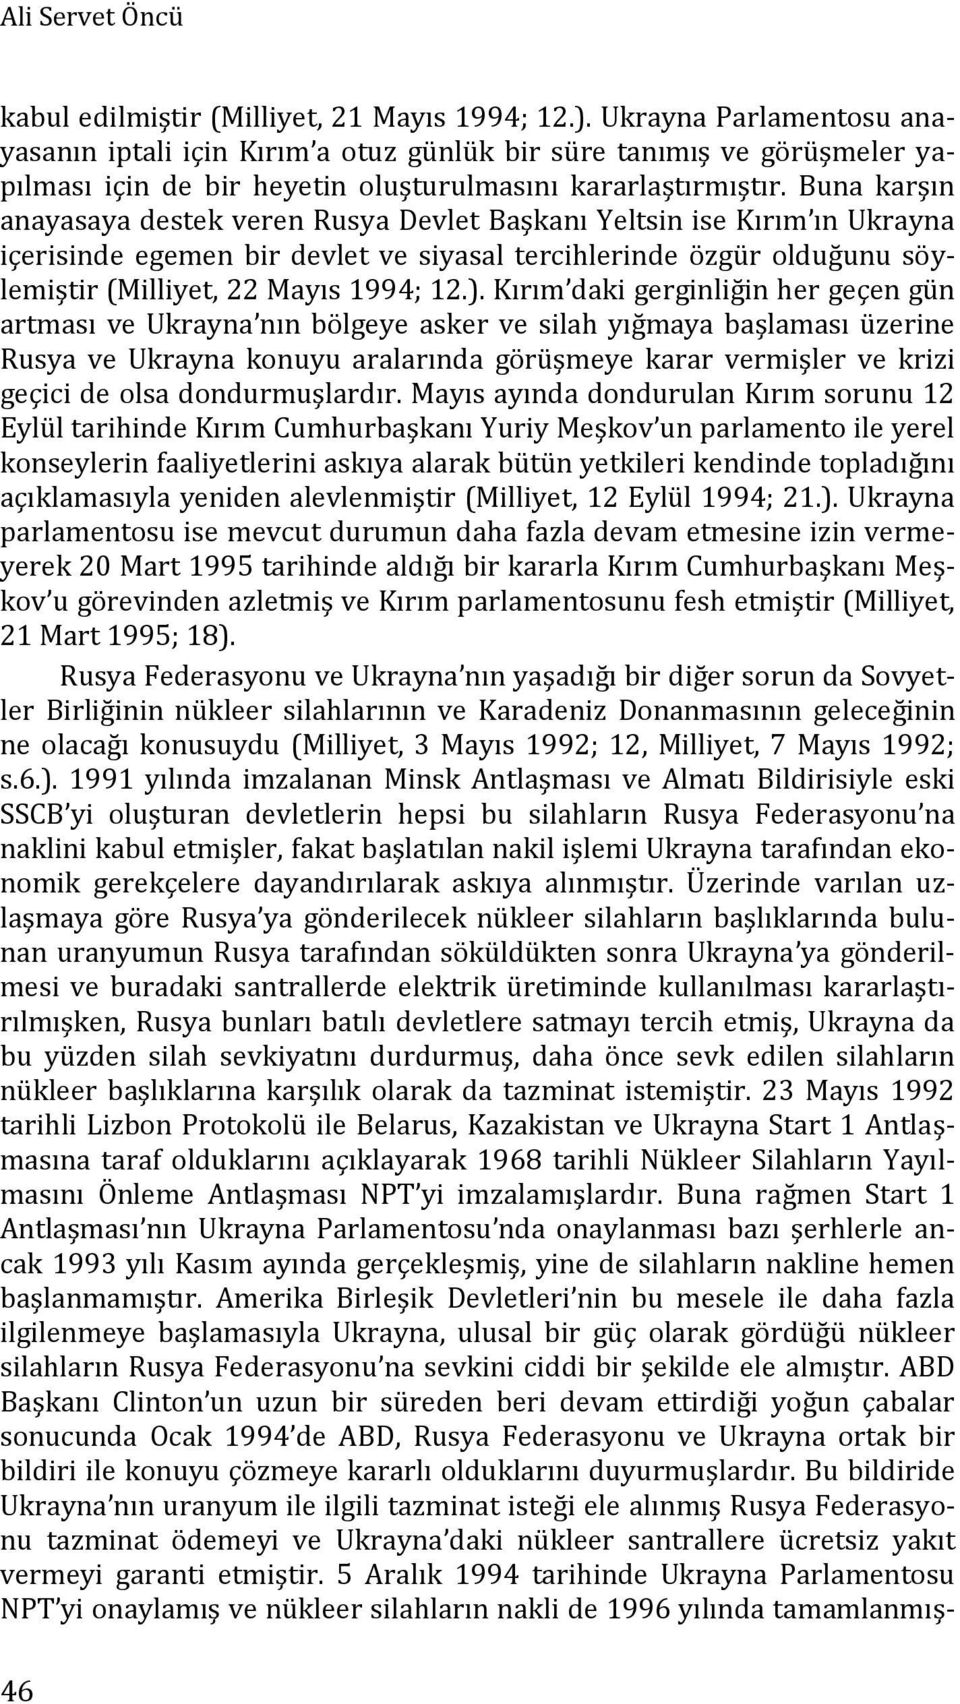 Buna karşın anayasaya destek veren Rusya Devlet Başkanı Yeltsin ise Kırım ın Ukrayna içerisinde egemen bir devlet ve siyasal tercihlerinde özgür olduğunu söylemiştir (Milliyet, 22 Mayıs 1994; 12.).